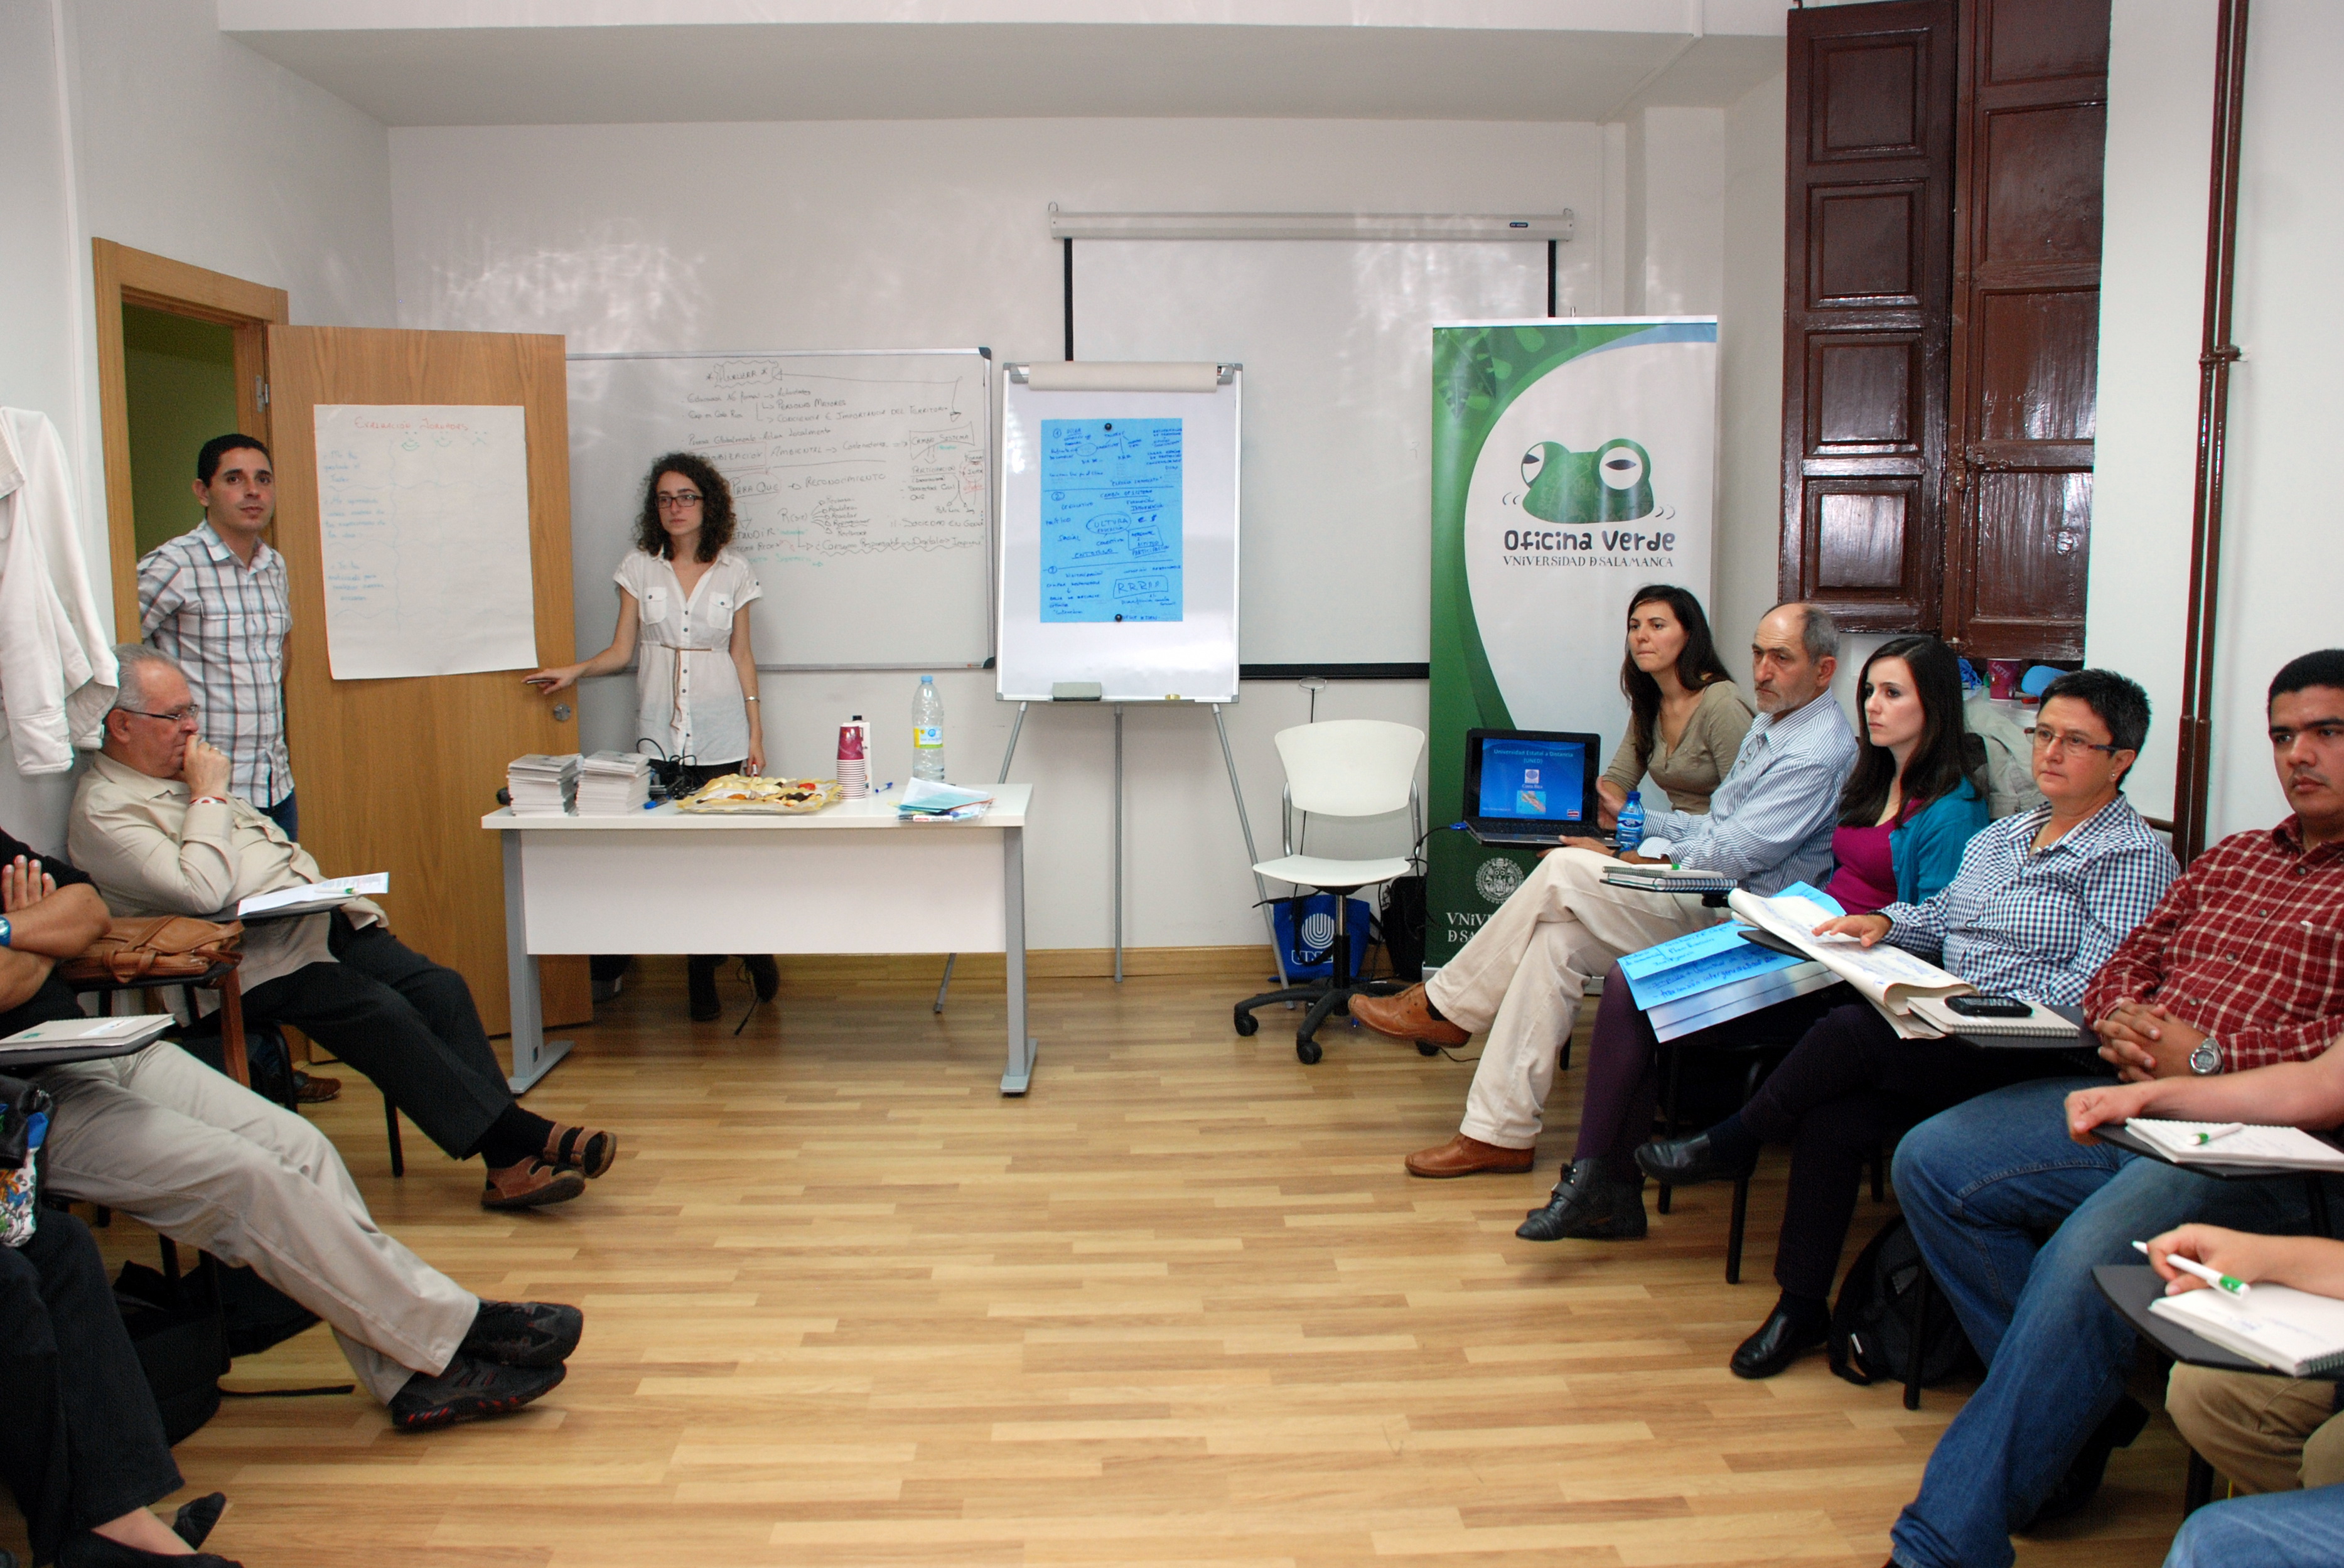 La Oficina Verde de la Universidad de Salamanca organiza una jornada sobre ‘Corresponsabilidad social y ambiental’